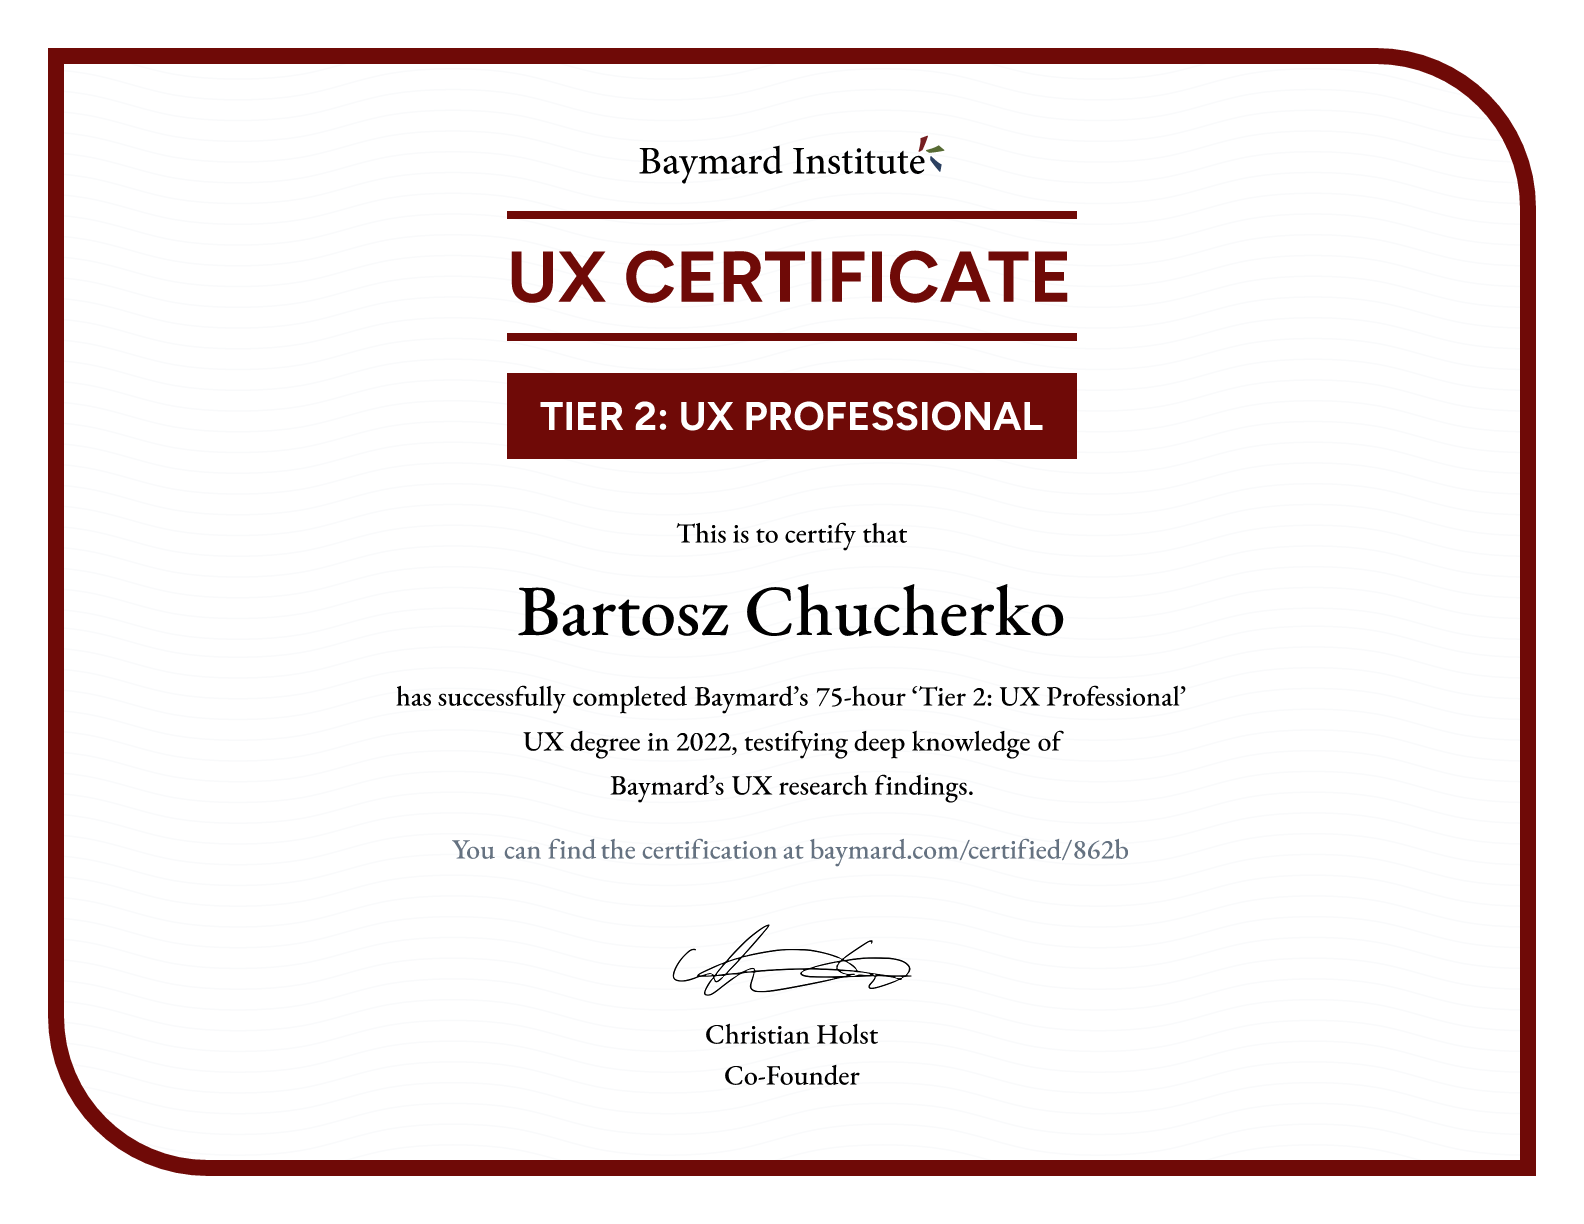 Bartosz Chucherko’s certificate